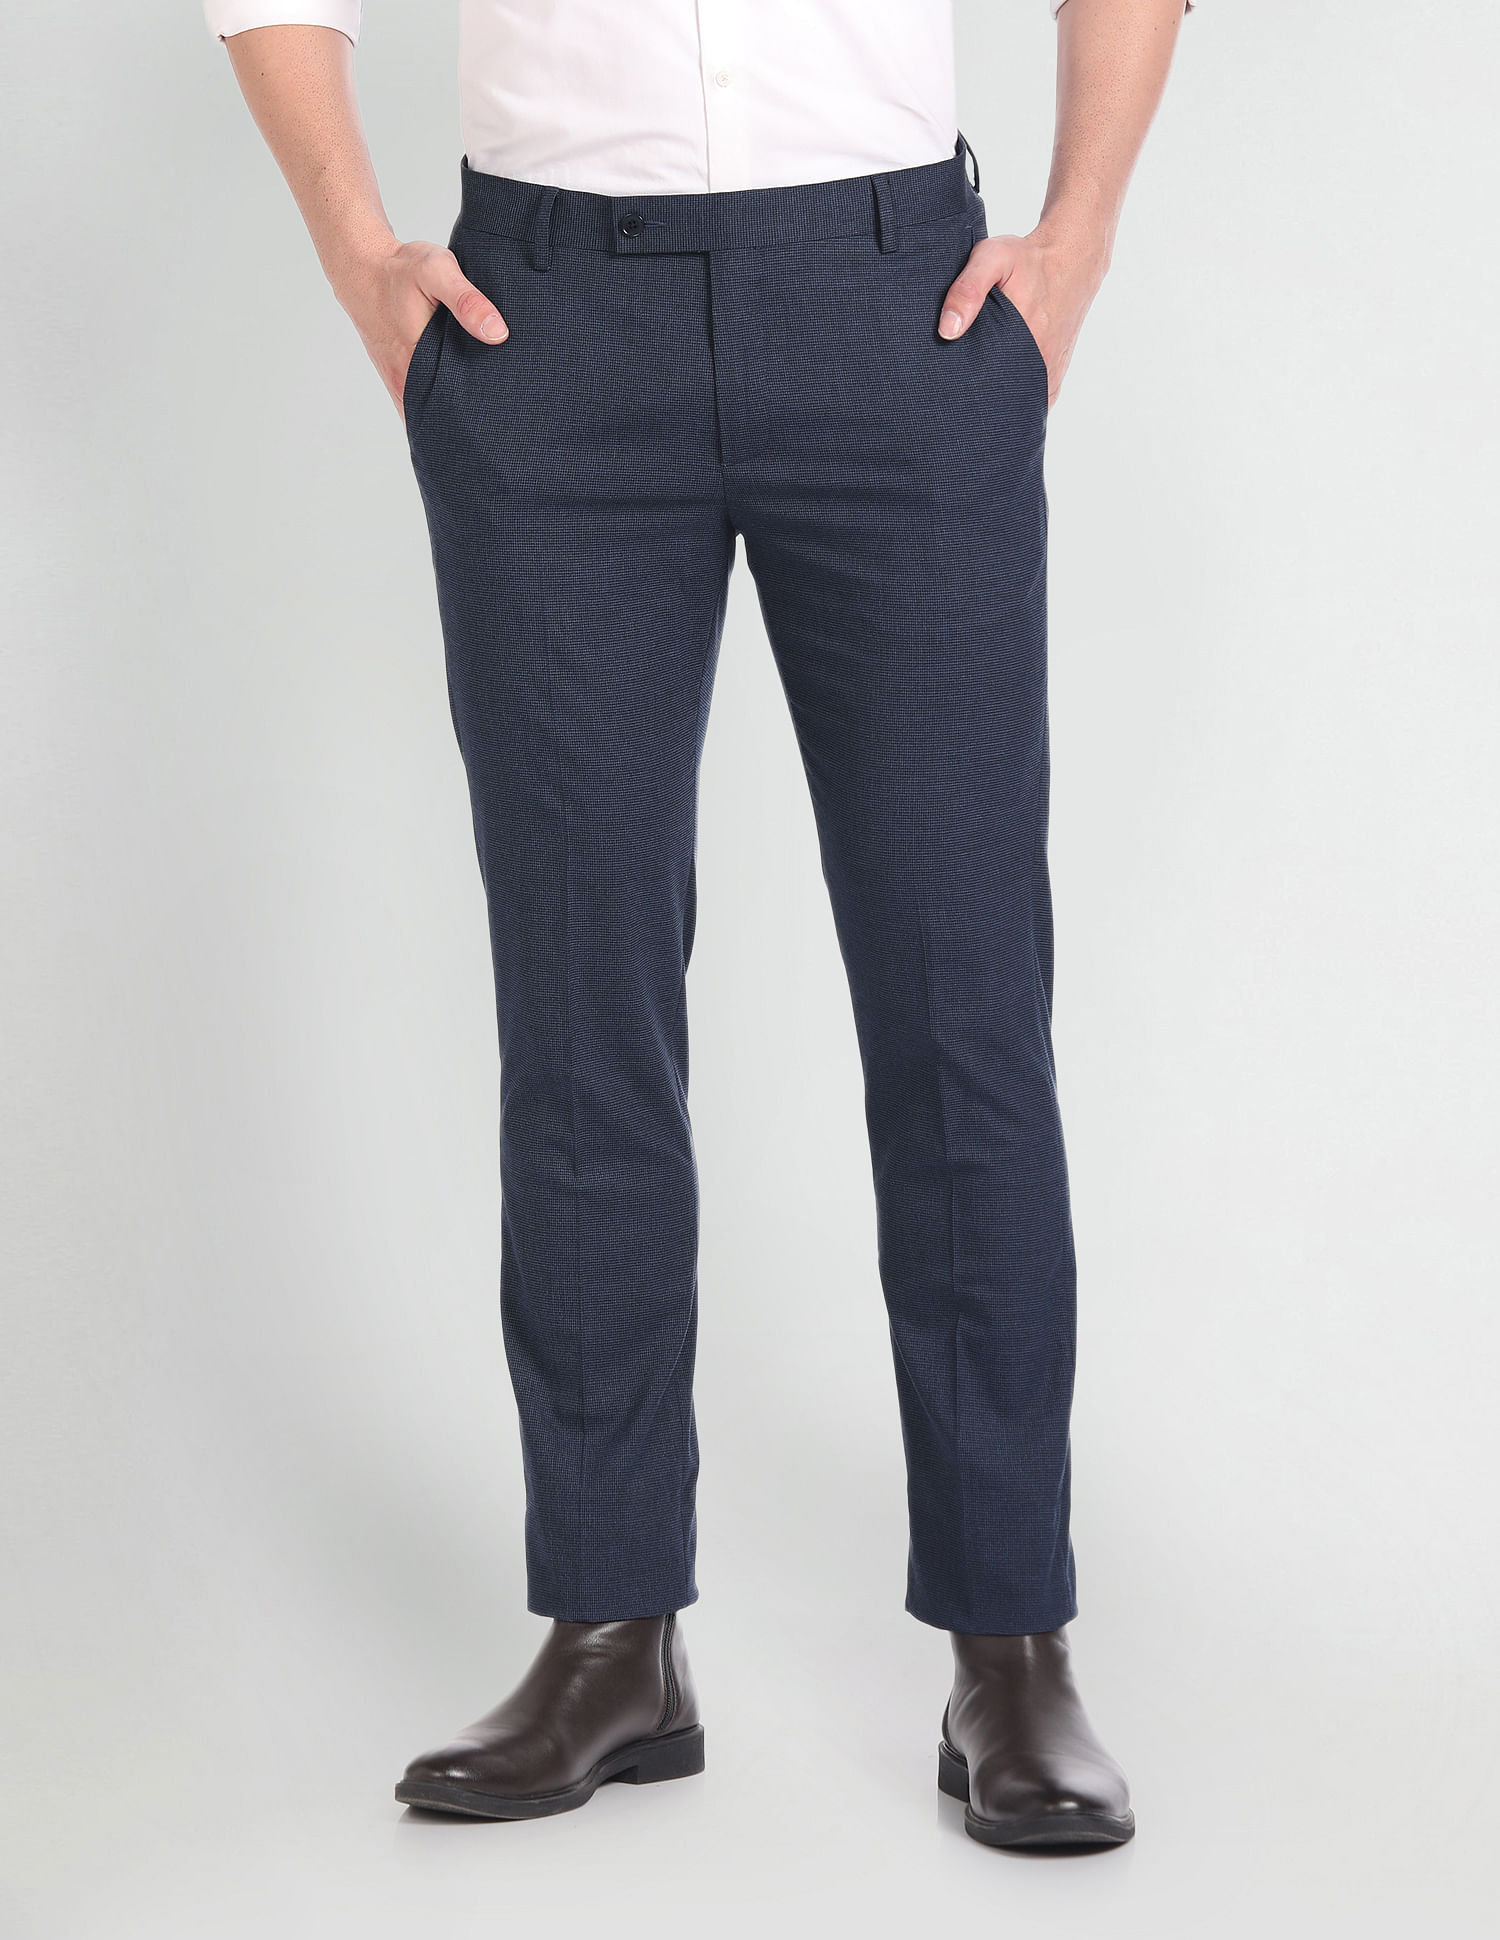 Suit Pants | Men's Suit Pants & Suit Trousers Online Australia | Oxford Shop